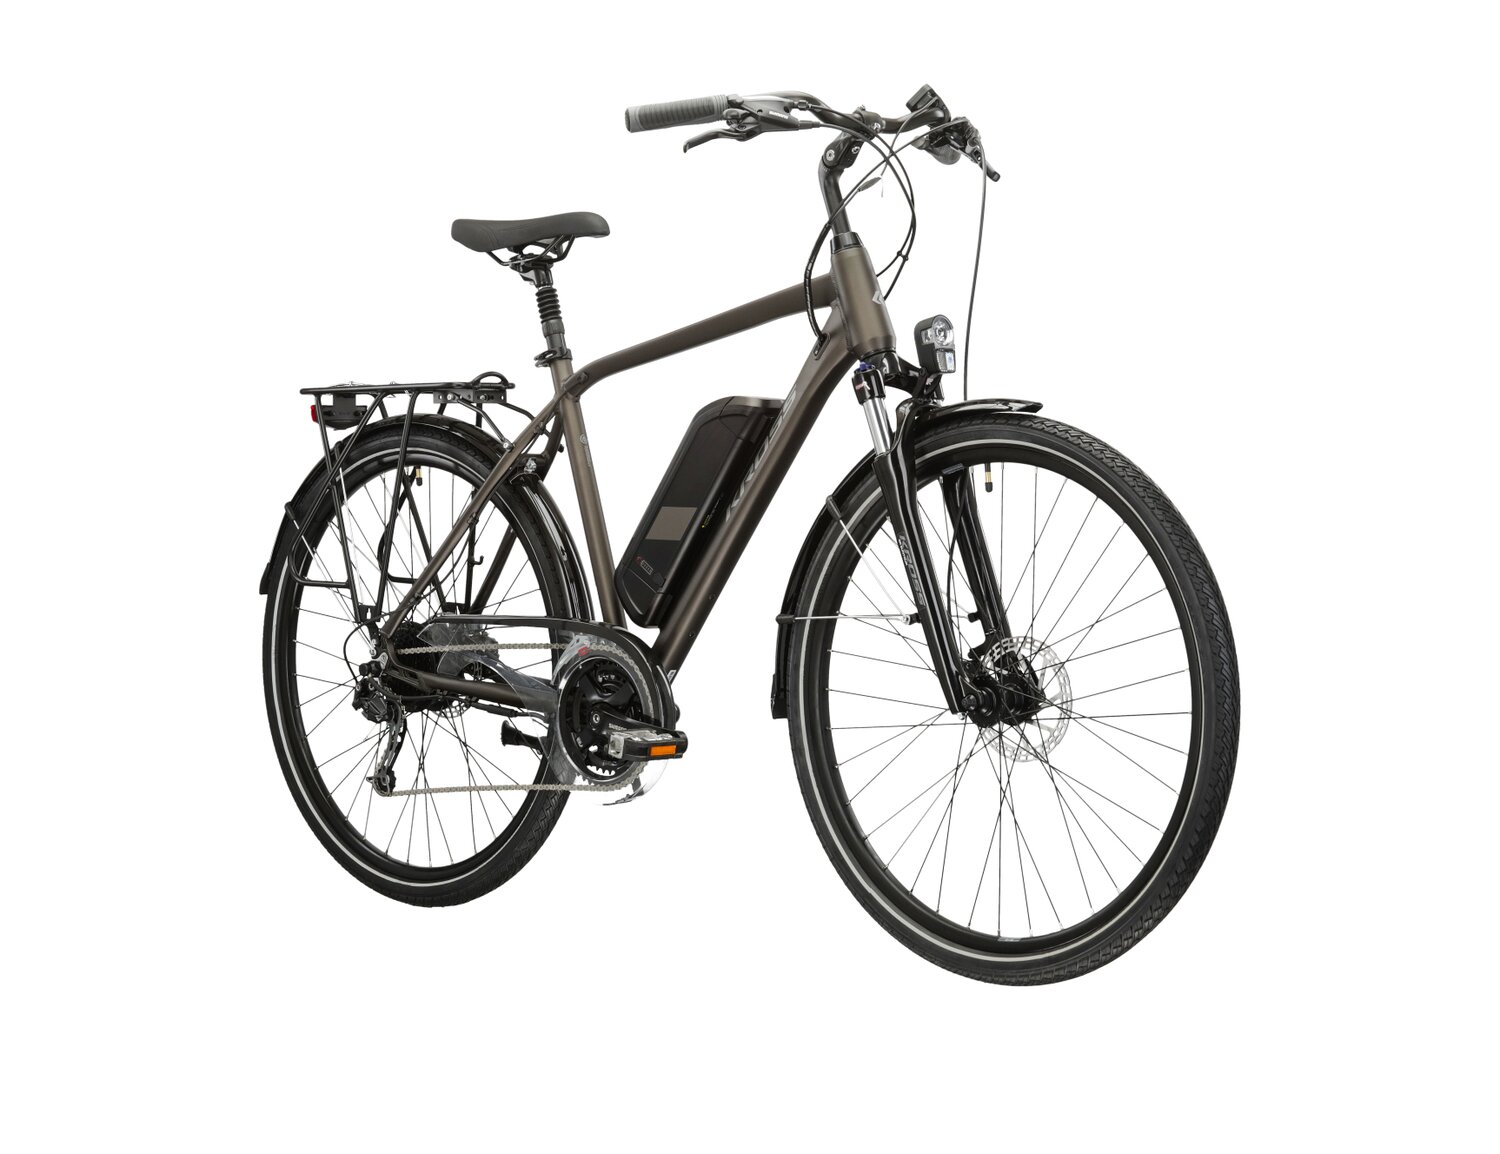  Elektryczny rower trekkingowy KROSS Trans Hybrid 522 Wh na aluminiowej ramie w kolorze brązowym wyposażony w osprzęt Shimano i napęd elektryczny Bafang